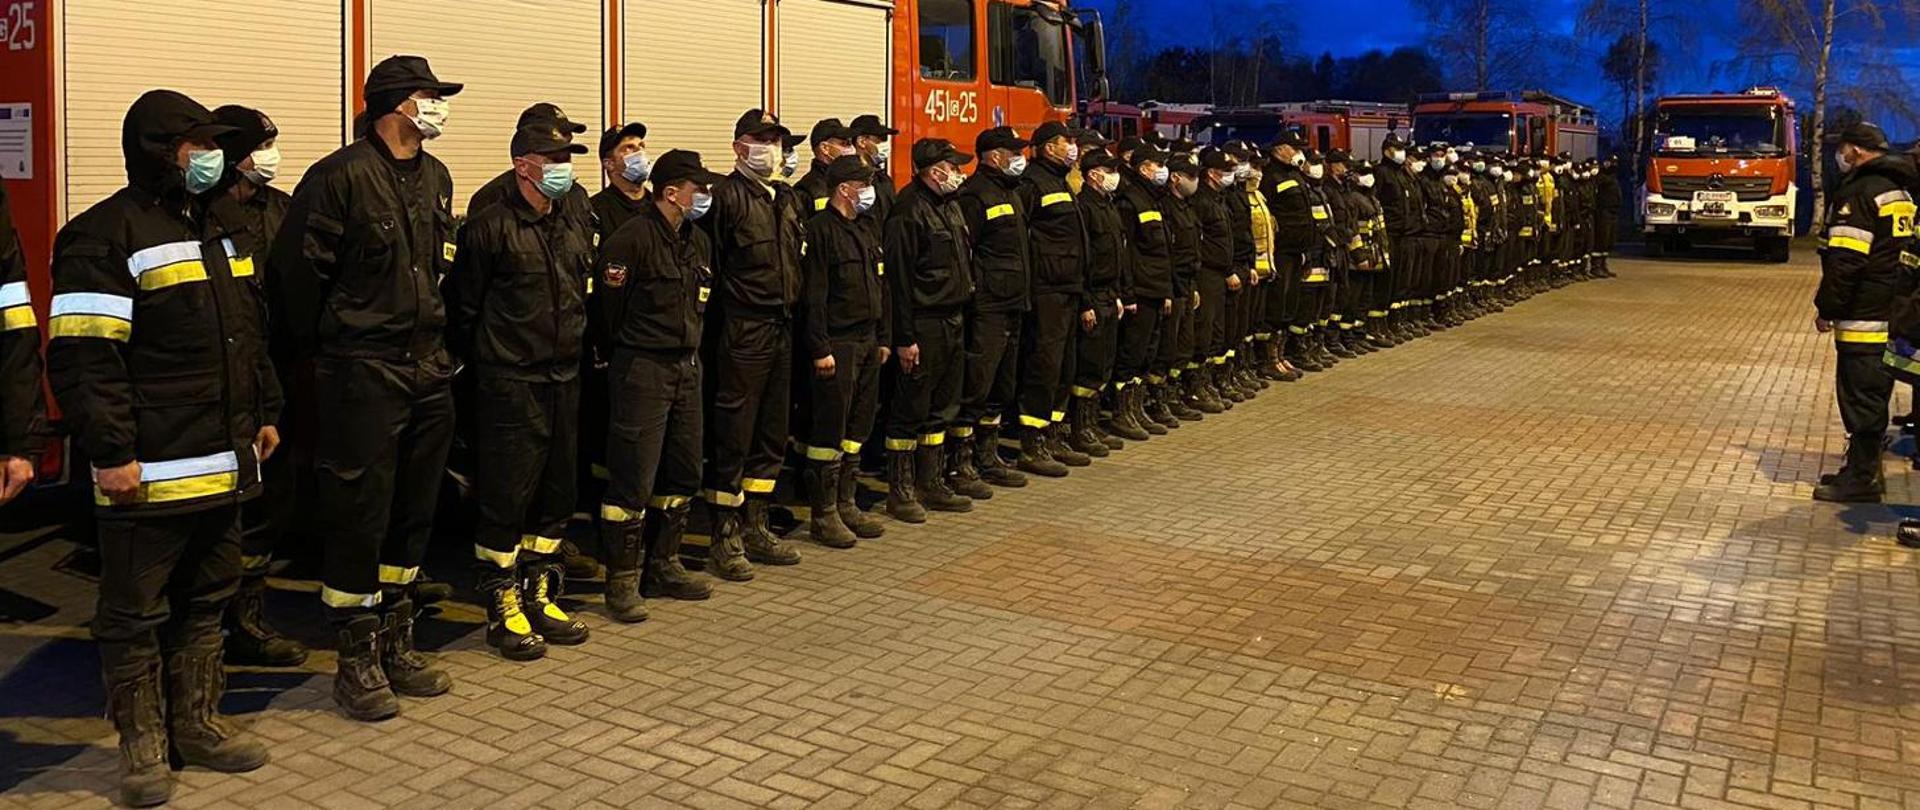 zdjęcie przedstawia kilkudziesięciu funkcjonariuszy Państwowej Straży Pożarnej podczas zbiórki 